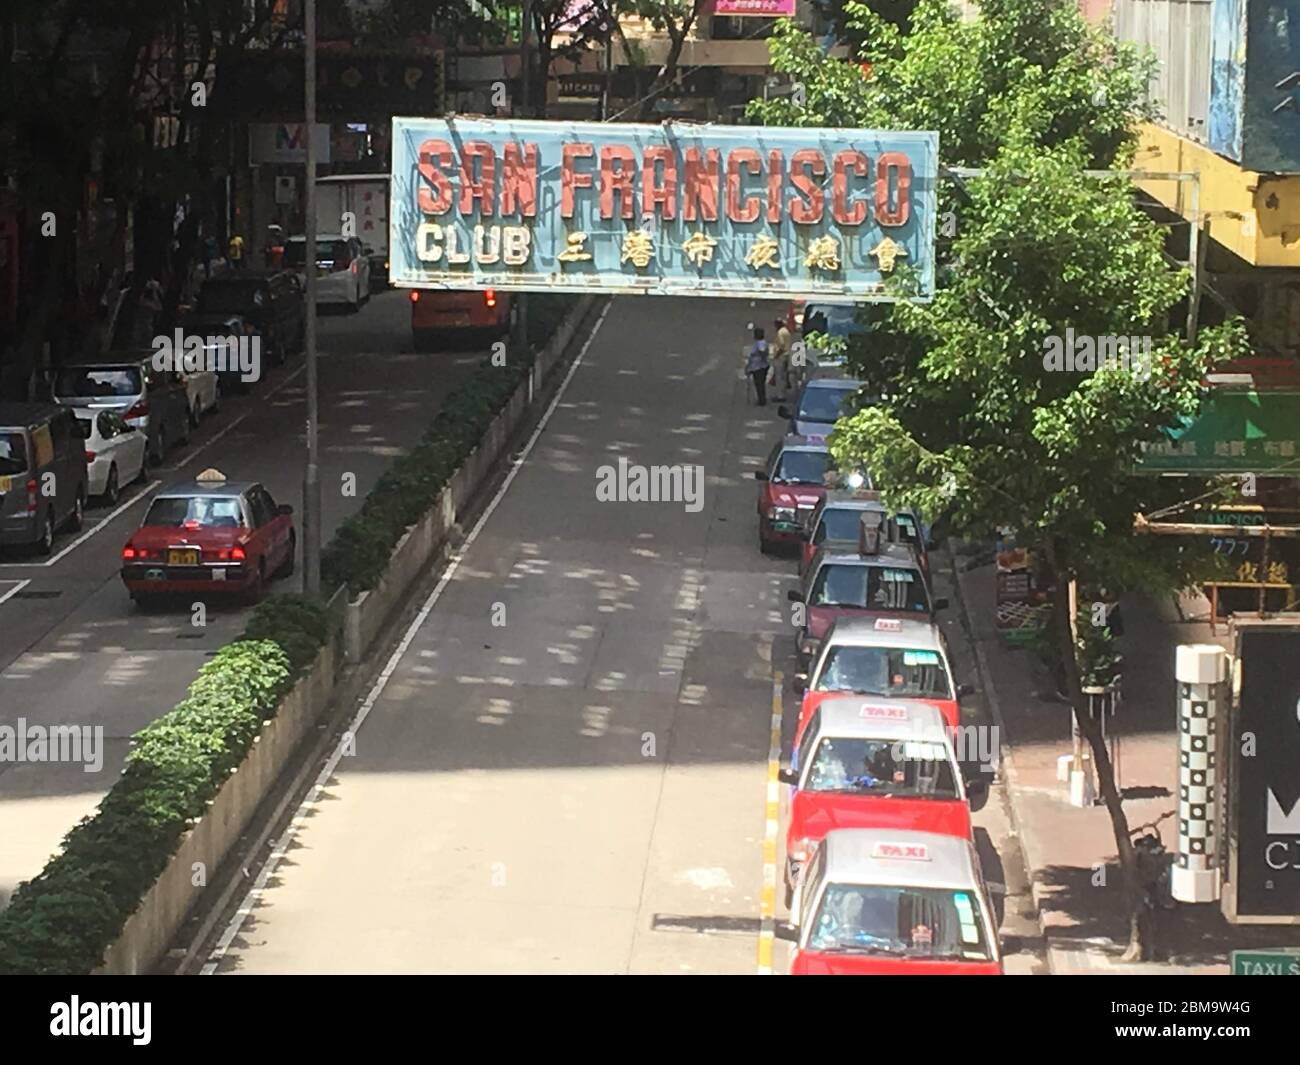 San Francisco Sign in Hong Kong Stock Photo